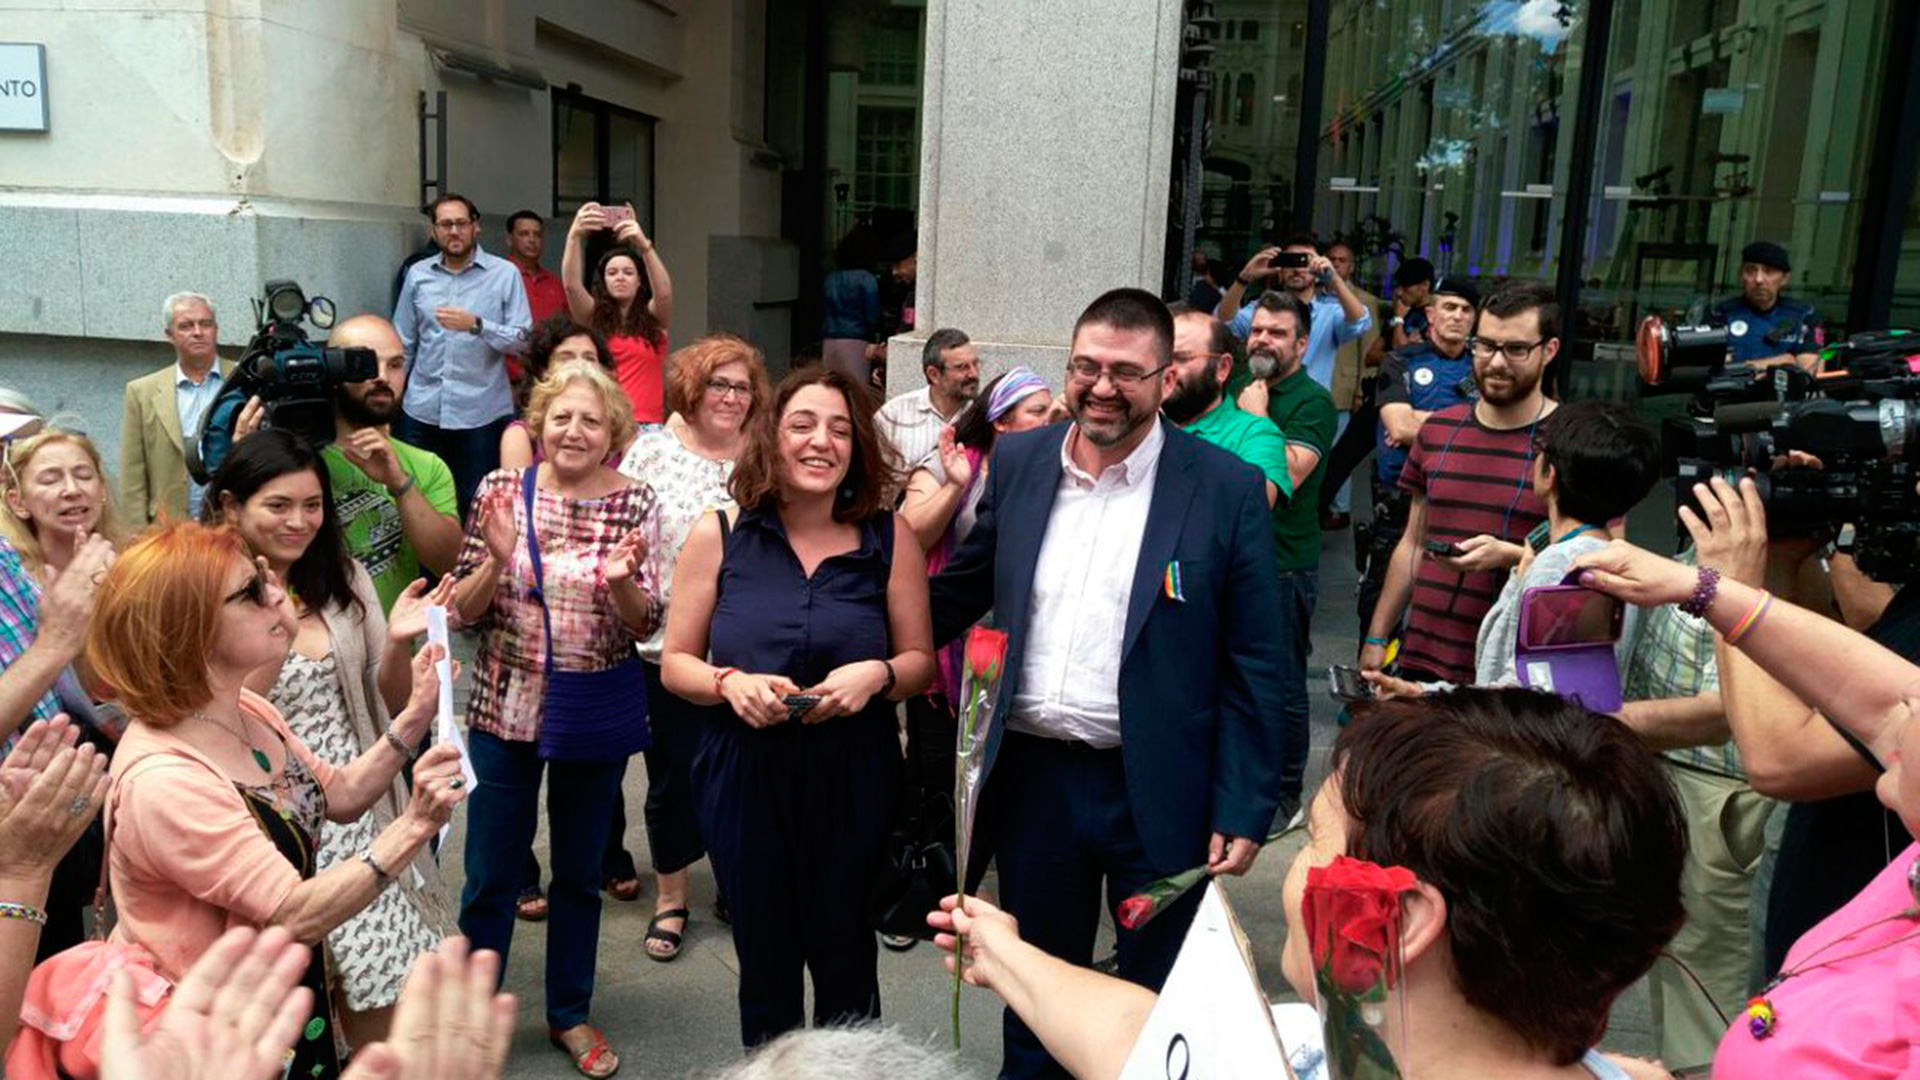 Los ediles Mayer y Sánchez Mato, reprobados por el pleno del Ayuntamiento de Madrid